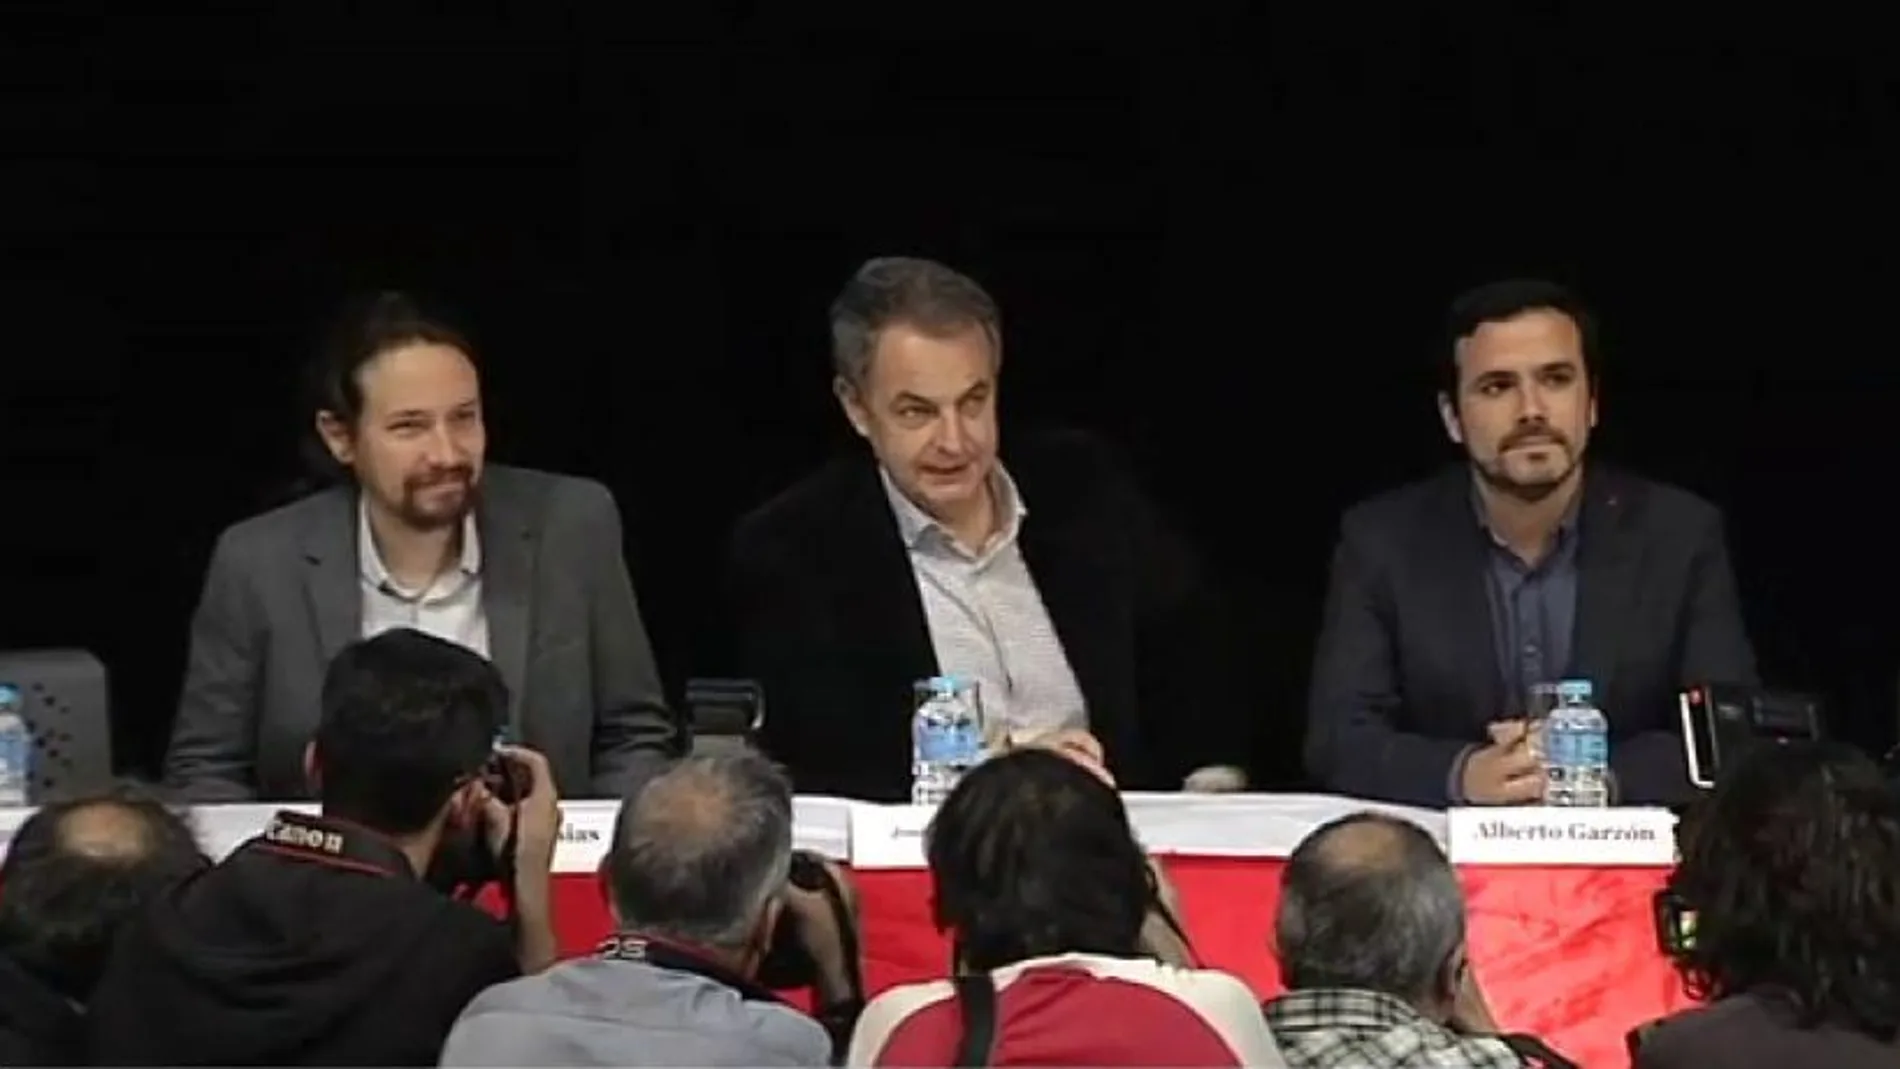 Pablo Iglesias, José Luis Rodríguez Zapatero y Alberto Garzón